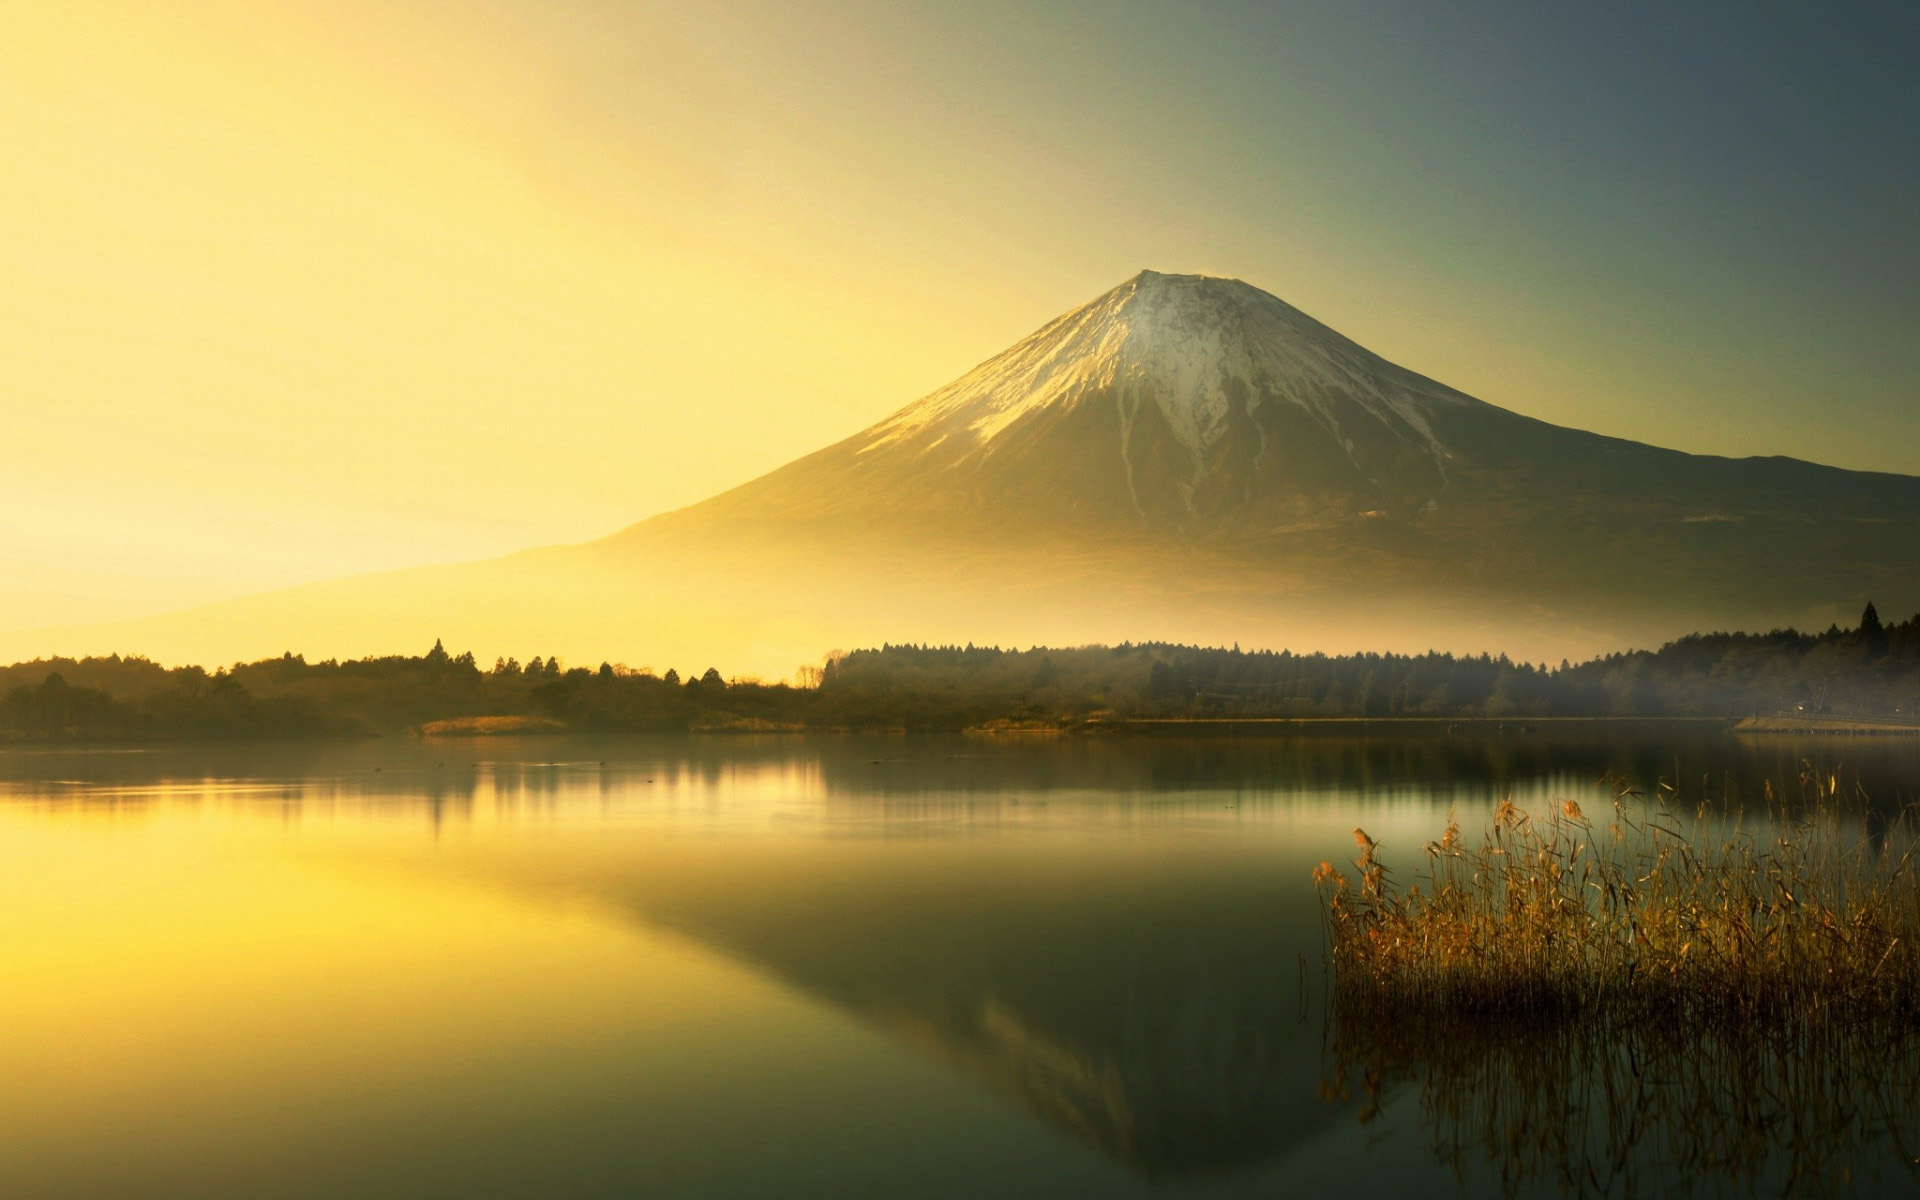 ダウンロード画像 富士山, 山中湖, 朝, 山々, 成層火山, 霧, フジヤマ, アジア, 日本のランドマーク, 日本, HDR 画面の解像度 1920x1200. 壁紙デスクトップ上